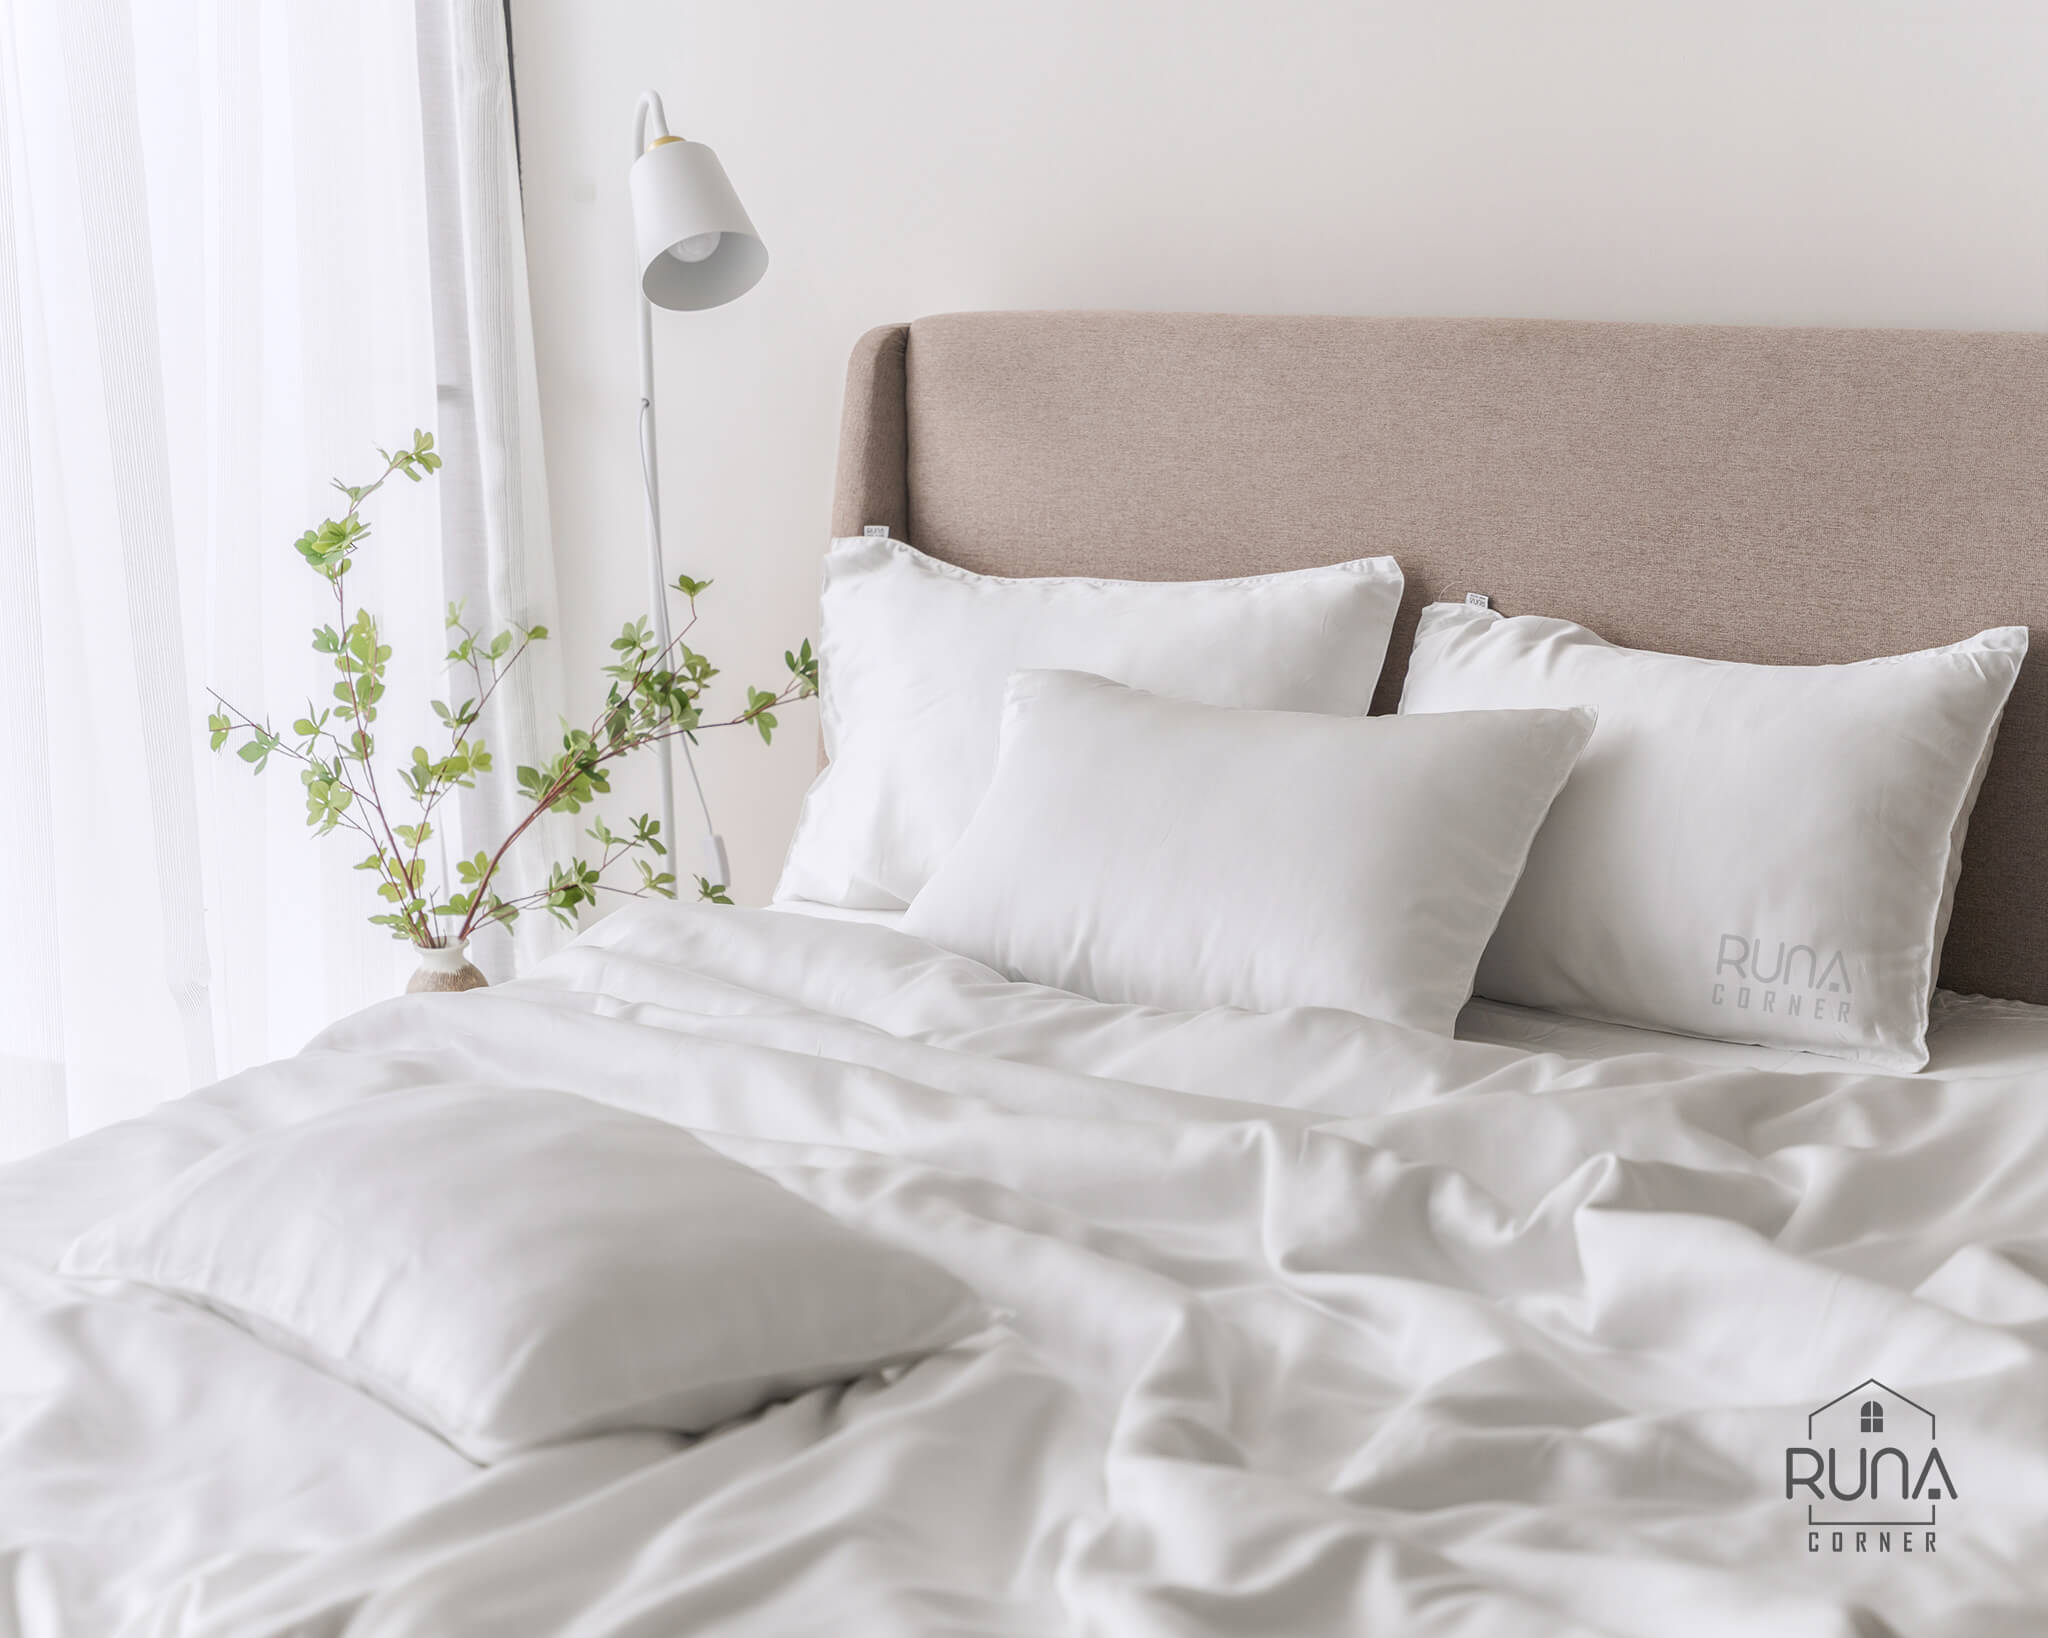 Ga trải giường Linen có tốt cho người hay bị ngủ nóng không?